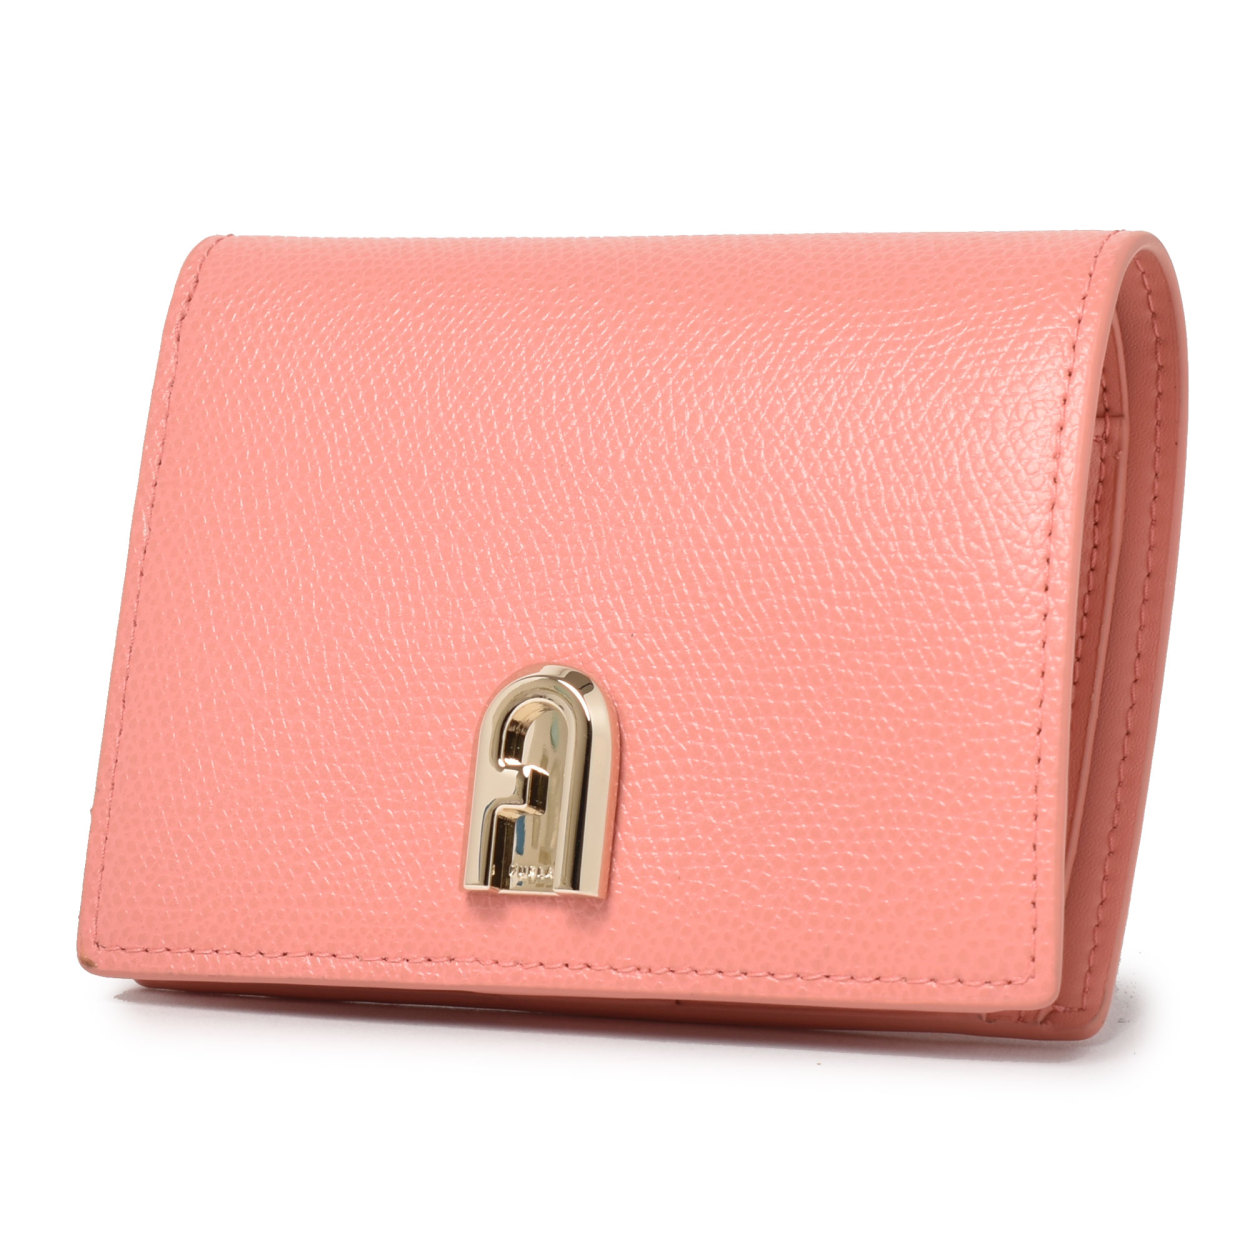 フルラ 財布 レディース  コンパクトウォレット   ブラック 黒 ピンク 2つ折り財布  コンパクト財布